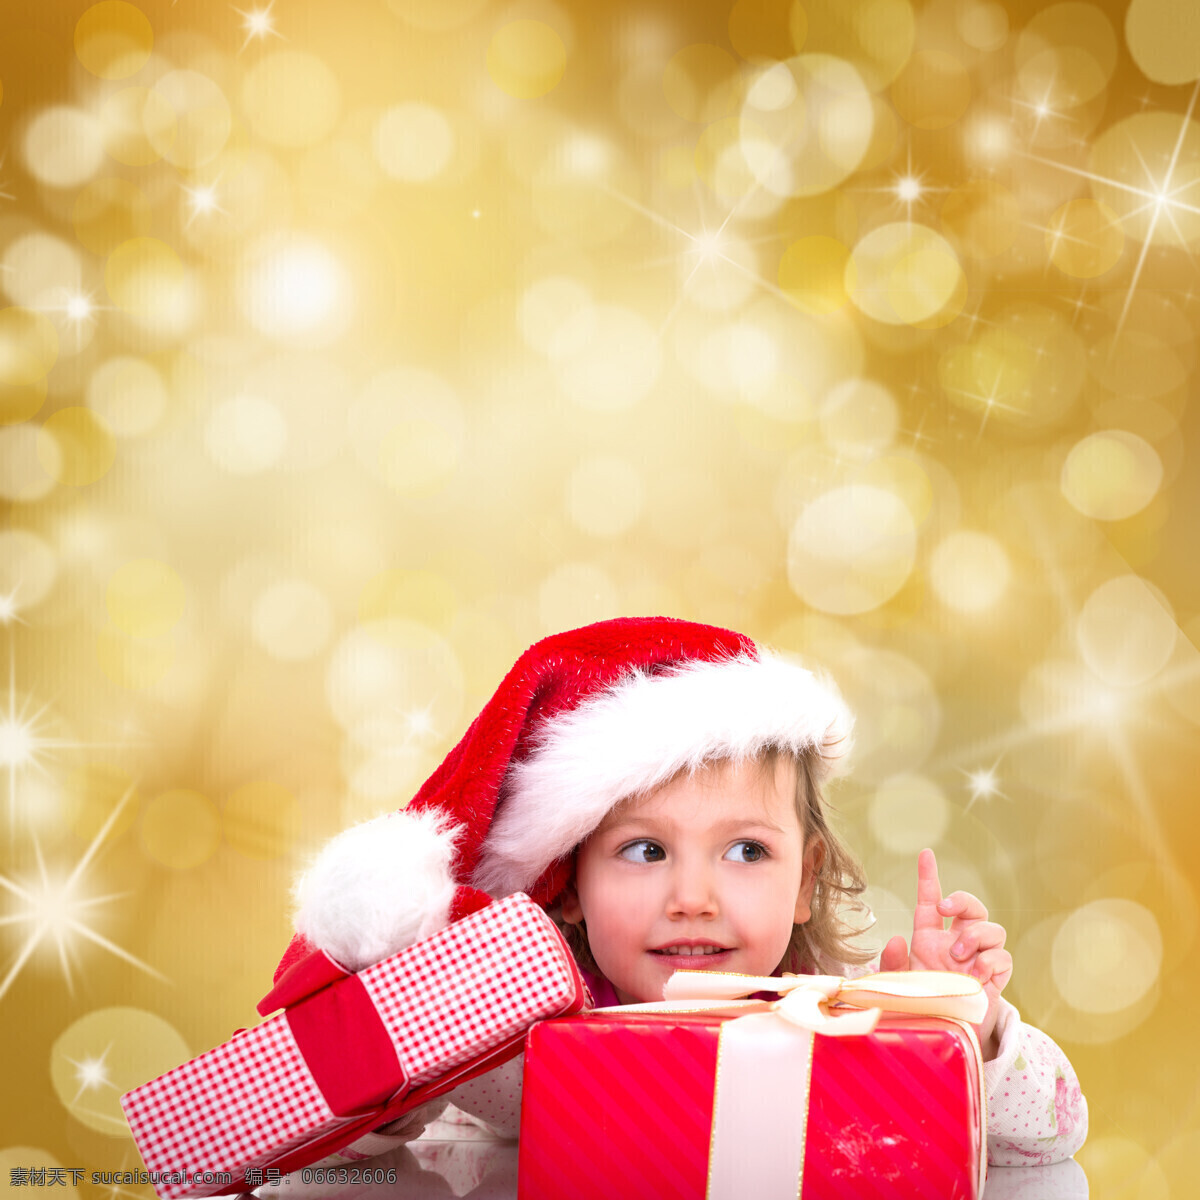 礼品盒 圣诞 宝宝 圣诞宝宝 星光 小孩 人物 宝宝图片 人物图片